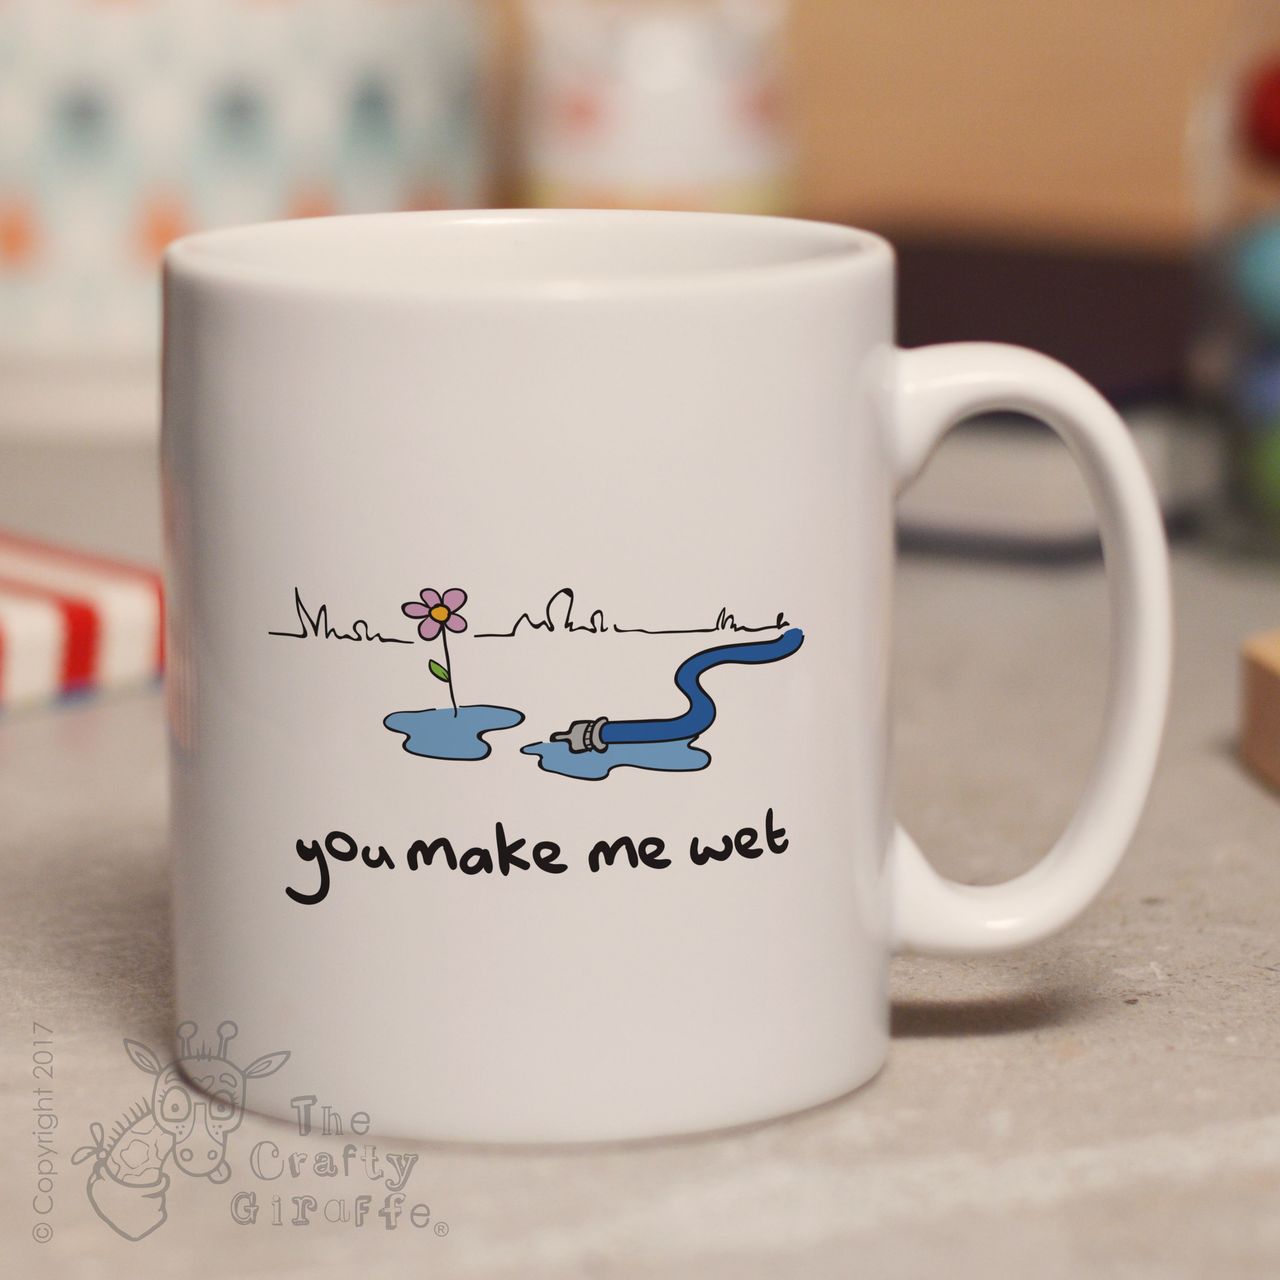 You make me wet mug